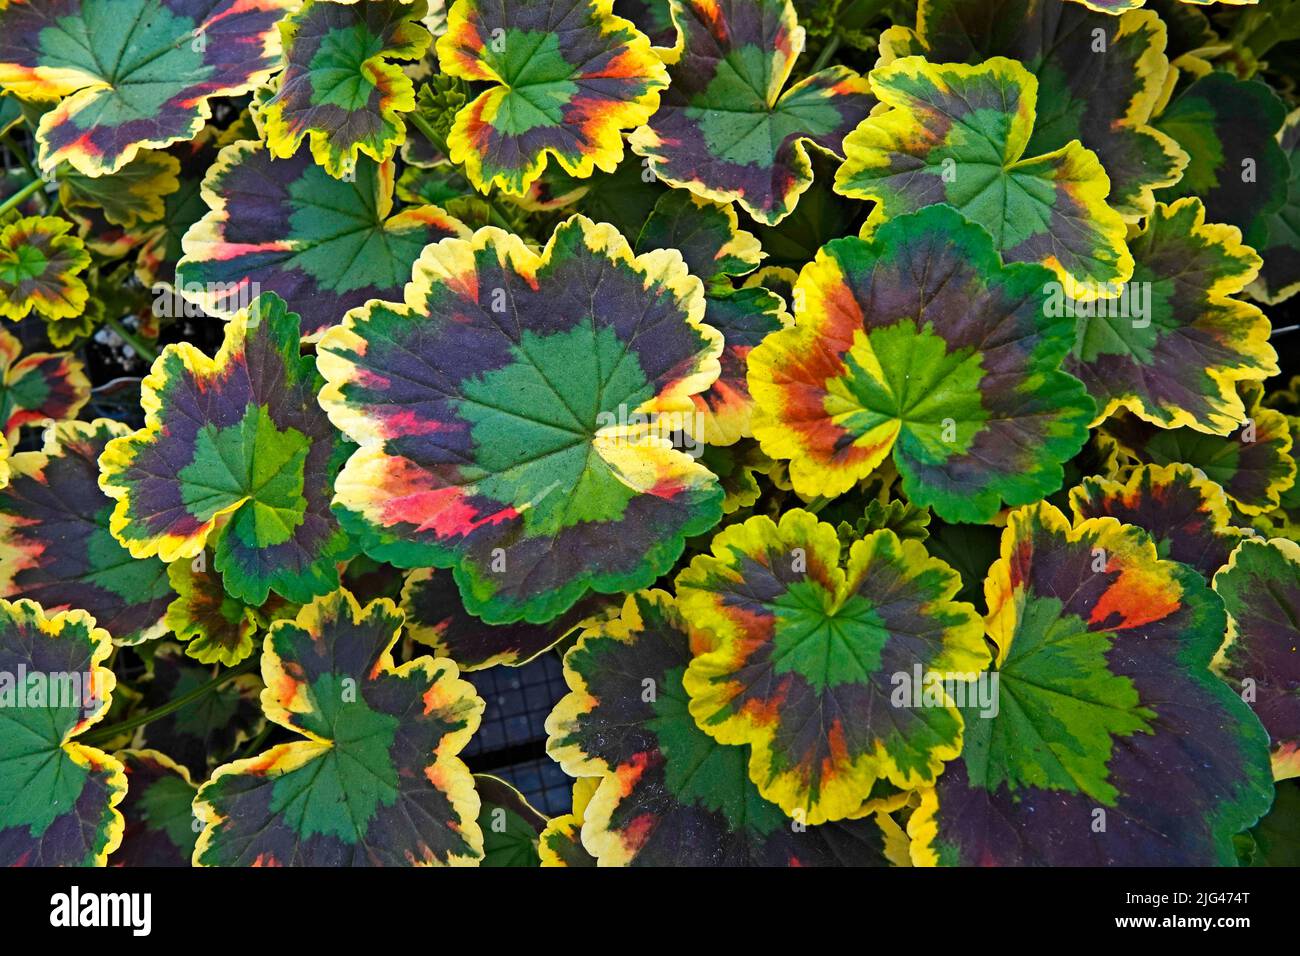 Les feuilles de plantes et de fleurs domestiques font de jolis motifs dans une pépinière à Bend, Oregon. Banque D'Images